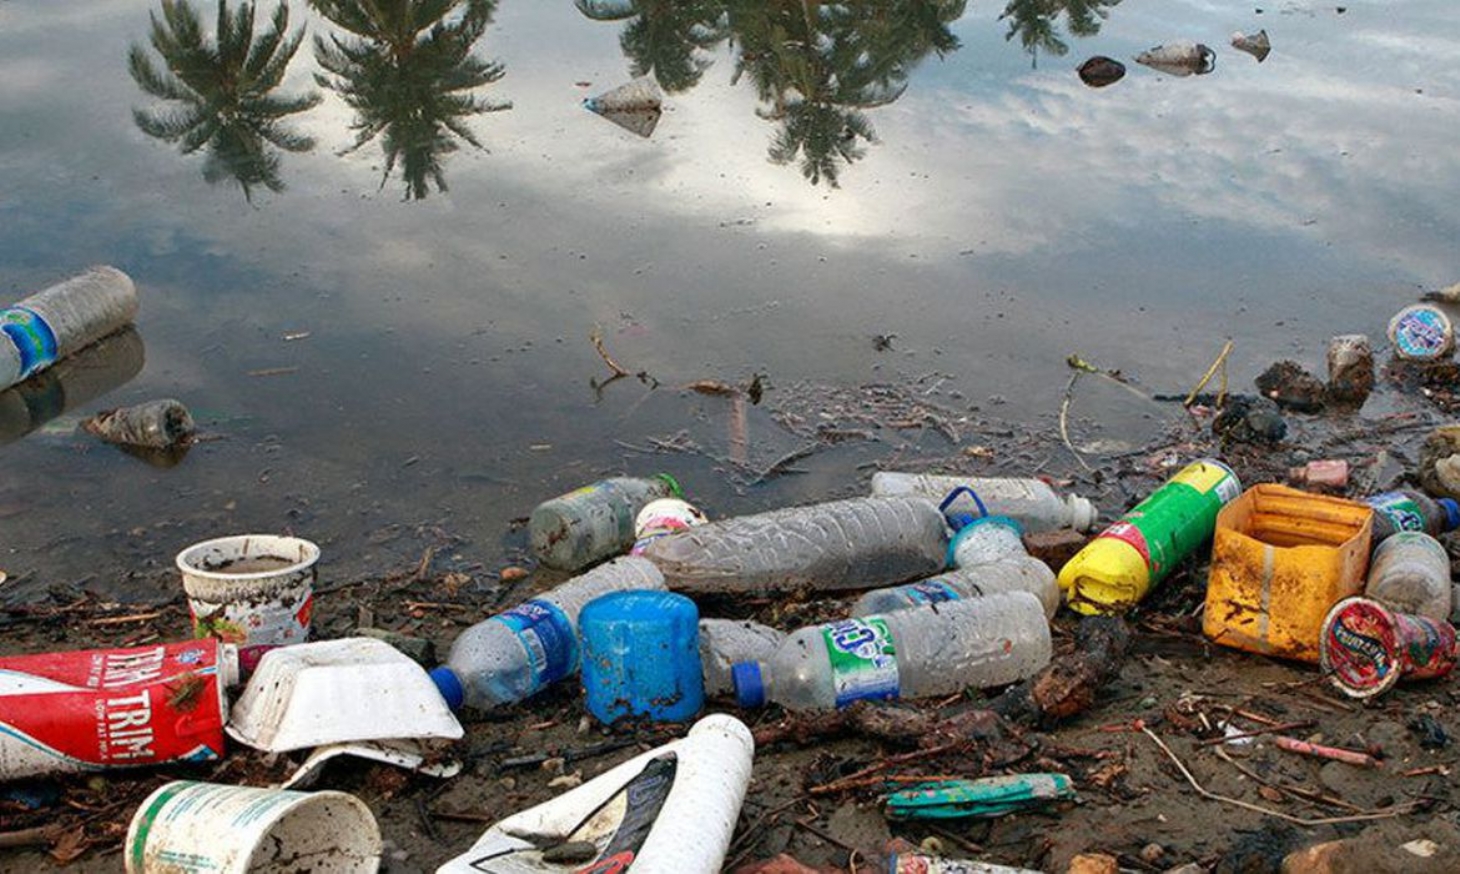 Plástico nos oceanos pode chegar a 600 milhões de toneladas em 2040 | Jornal da Orla